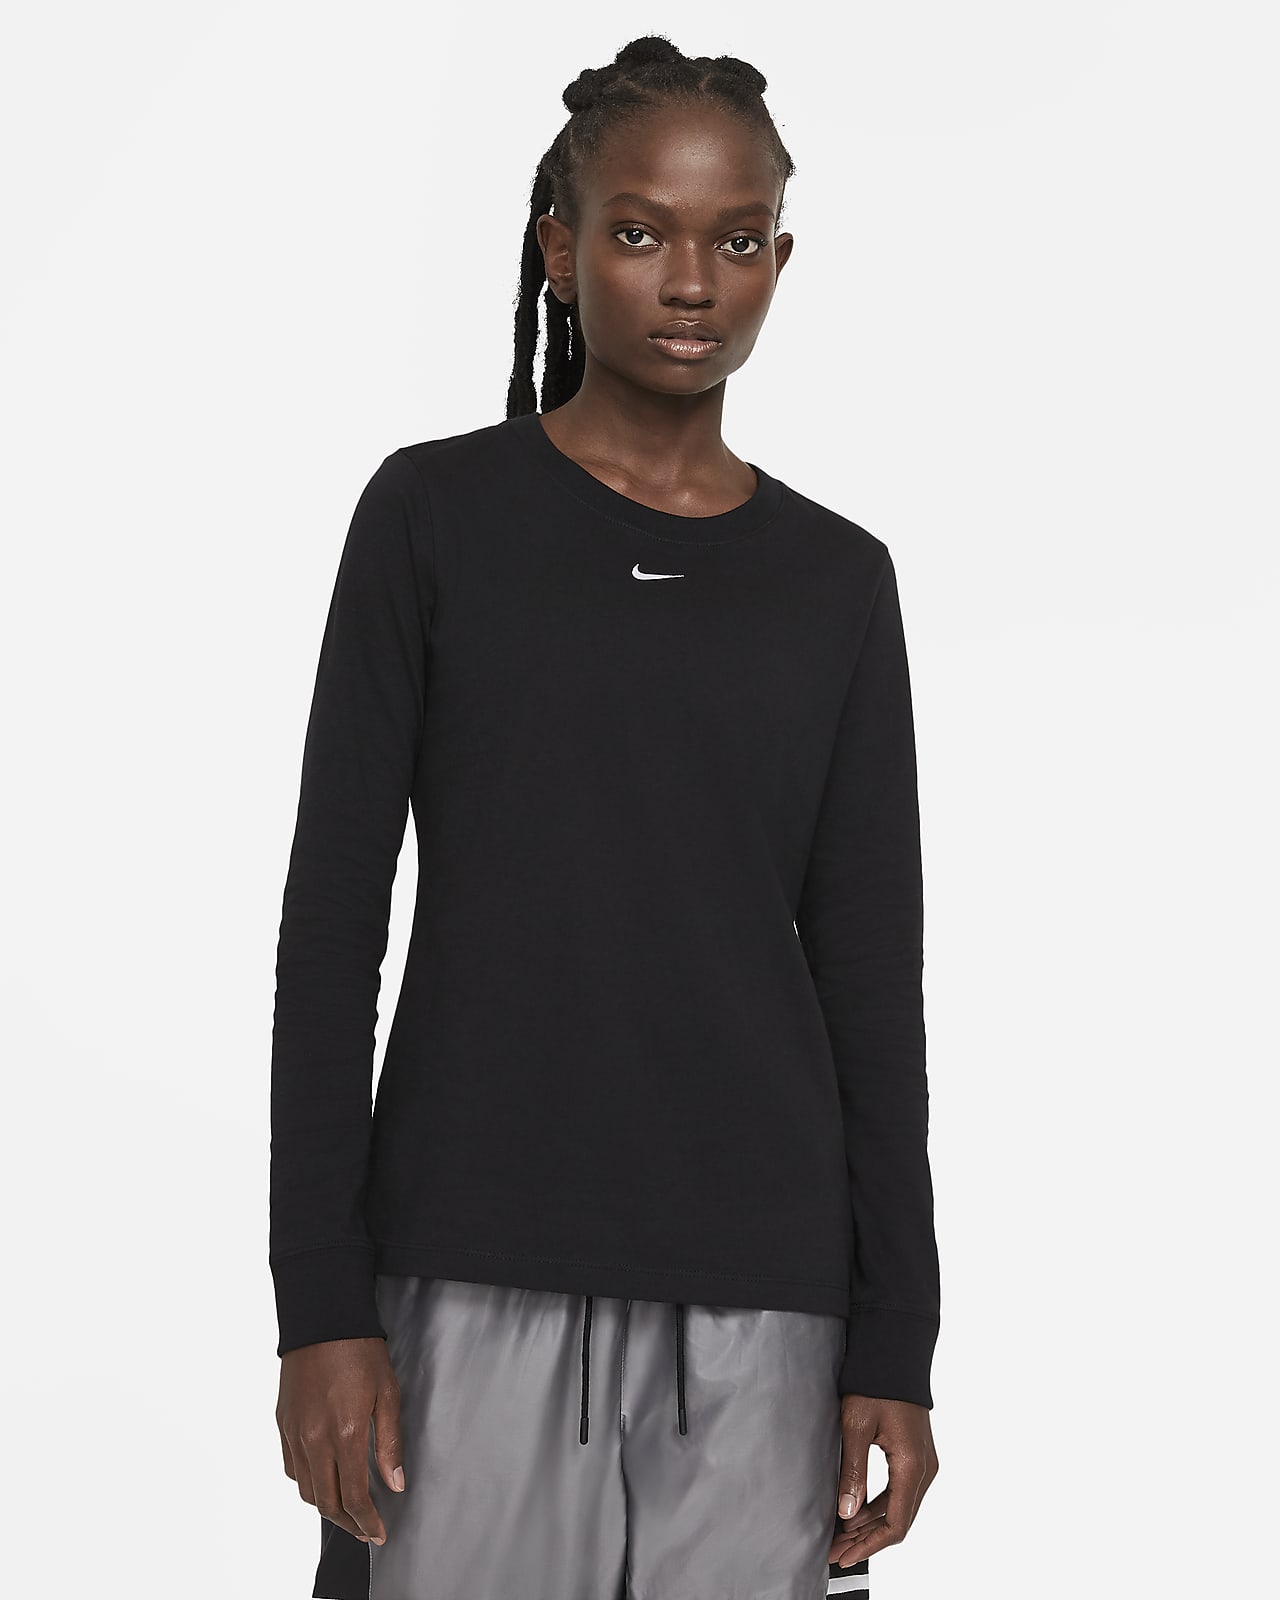 Lío equivocado Calma Nike Sportswear Women's Long-Sleeve T-Shirt. Nike ZA